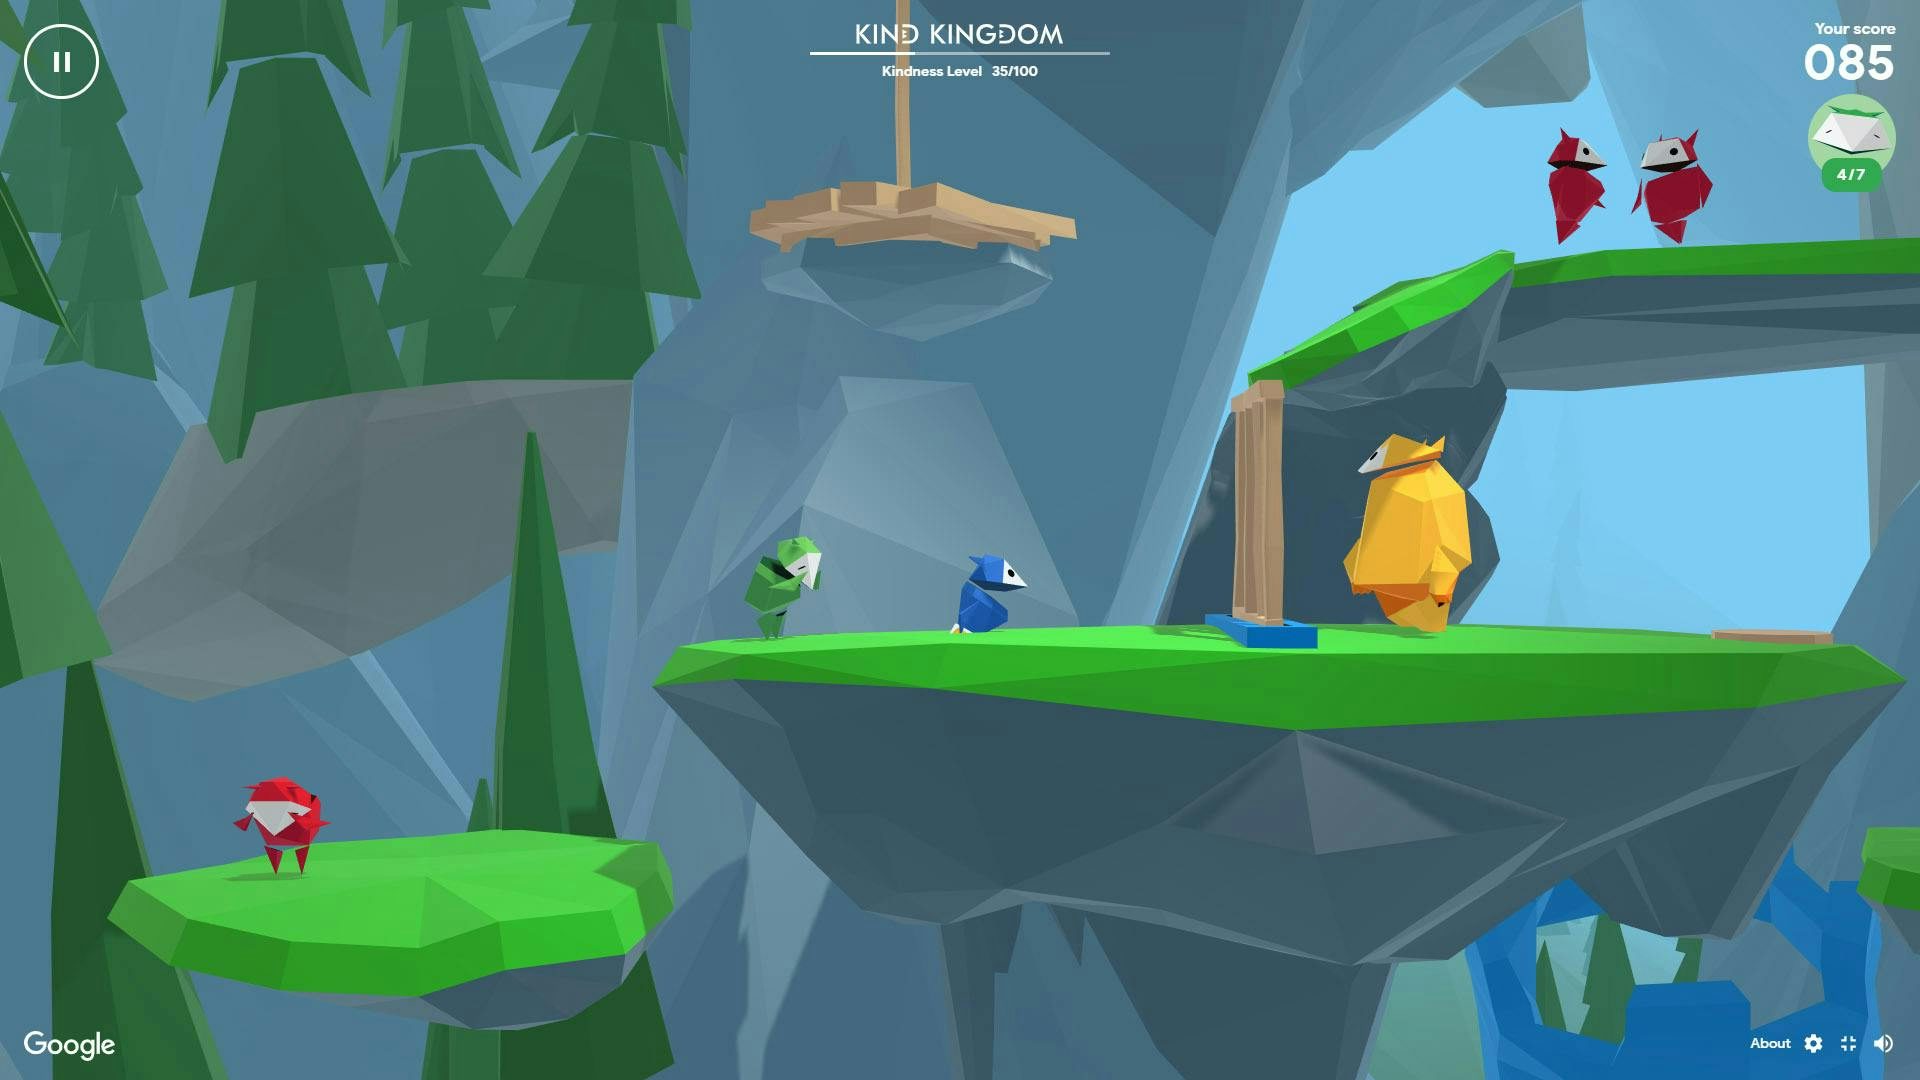 Google Interland Kind Kingdom game